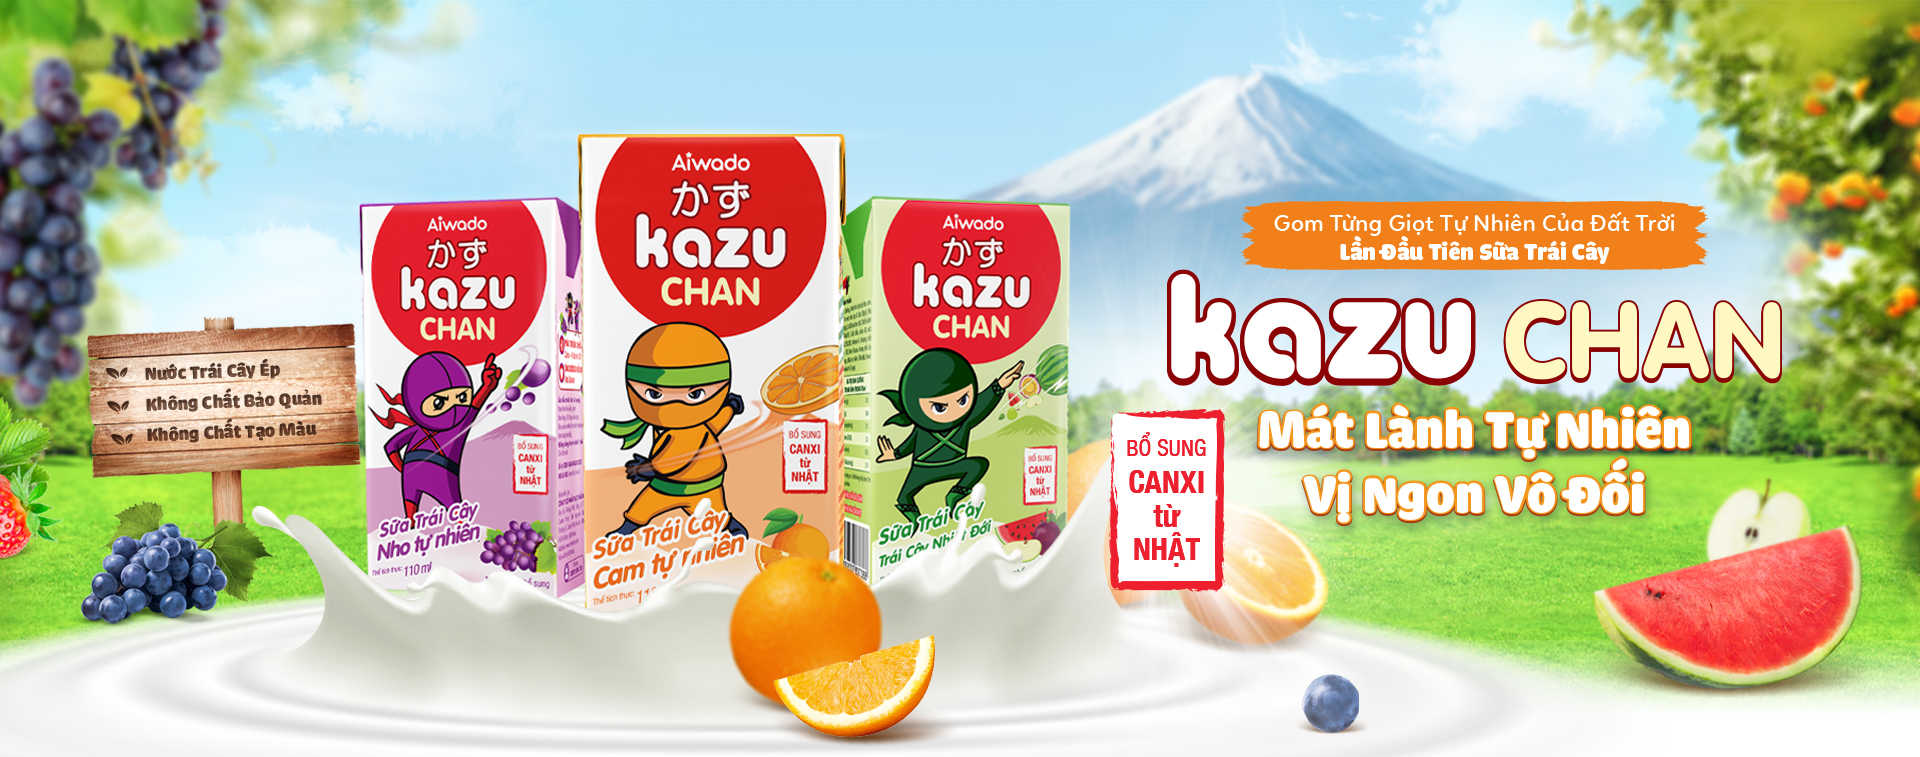 Kazu Chan - Sữa Trái Cây